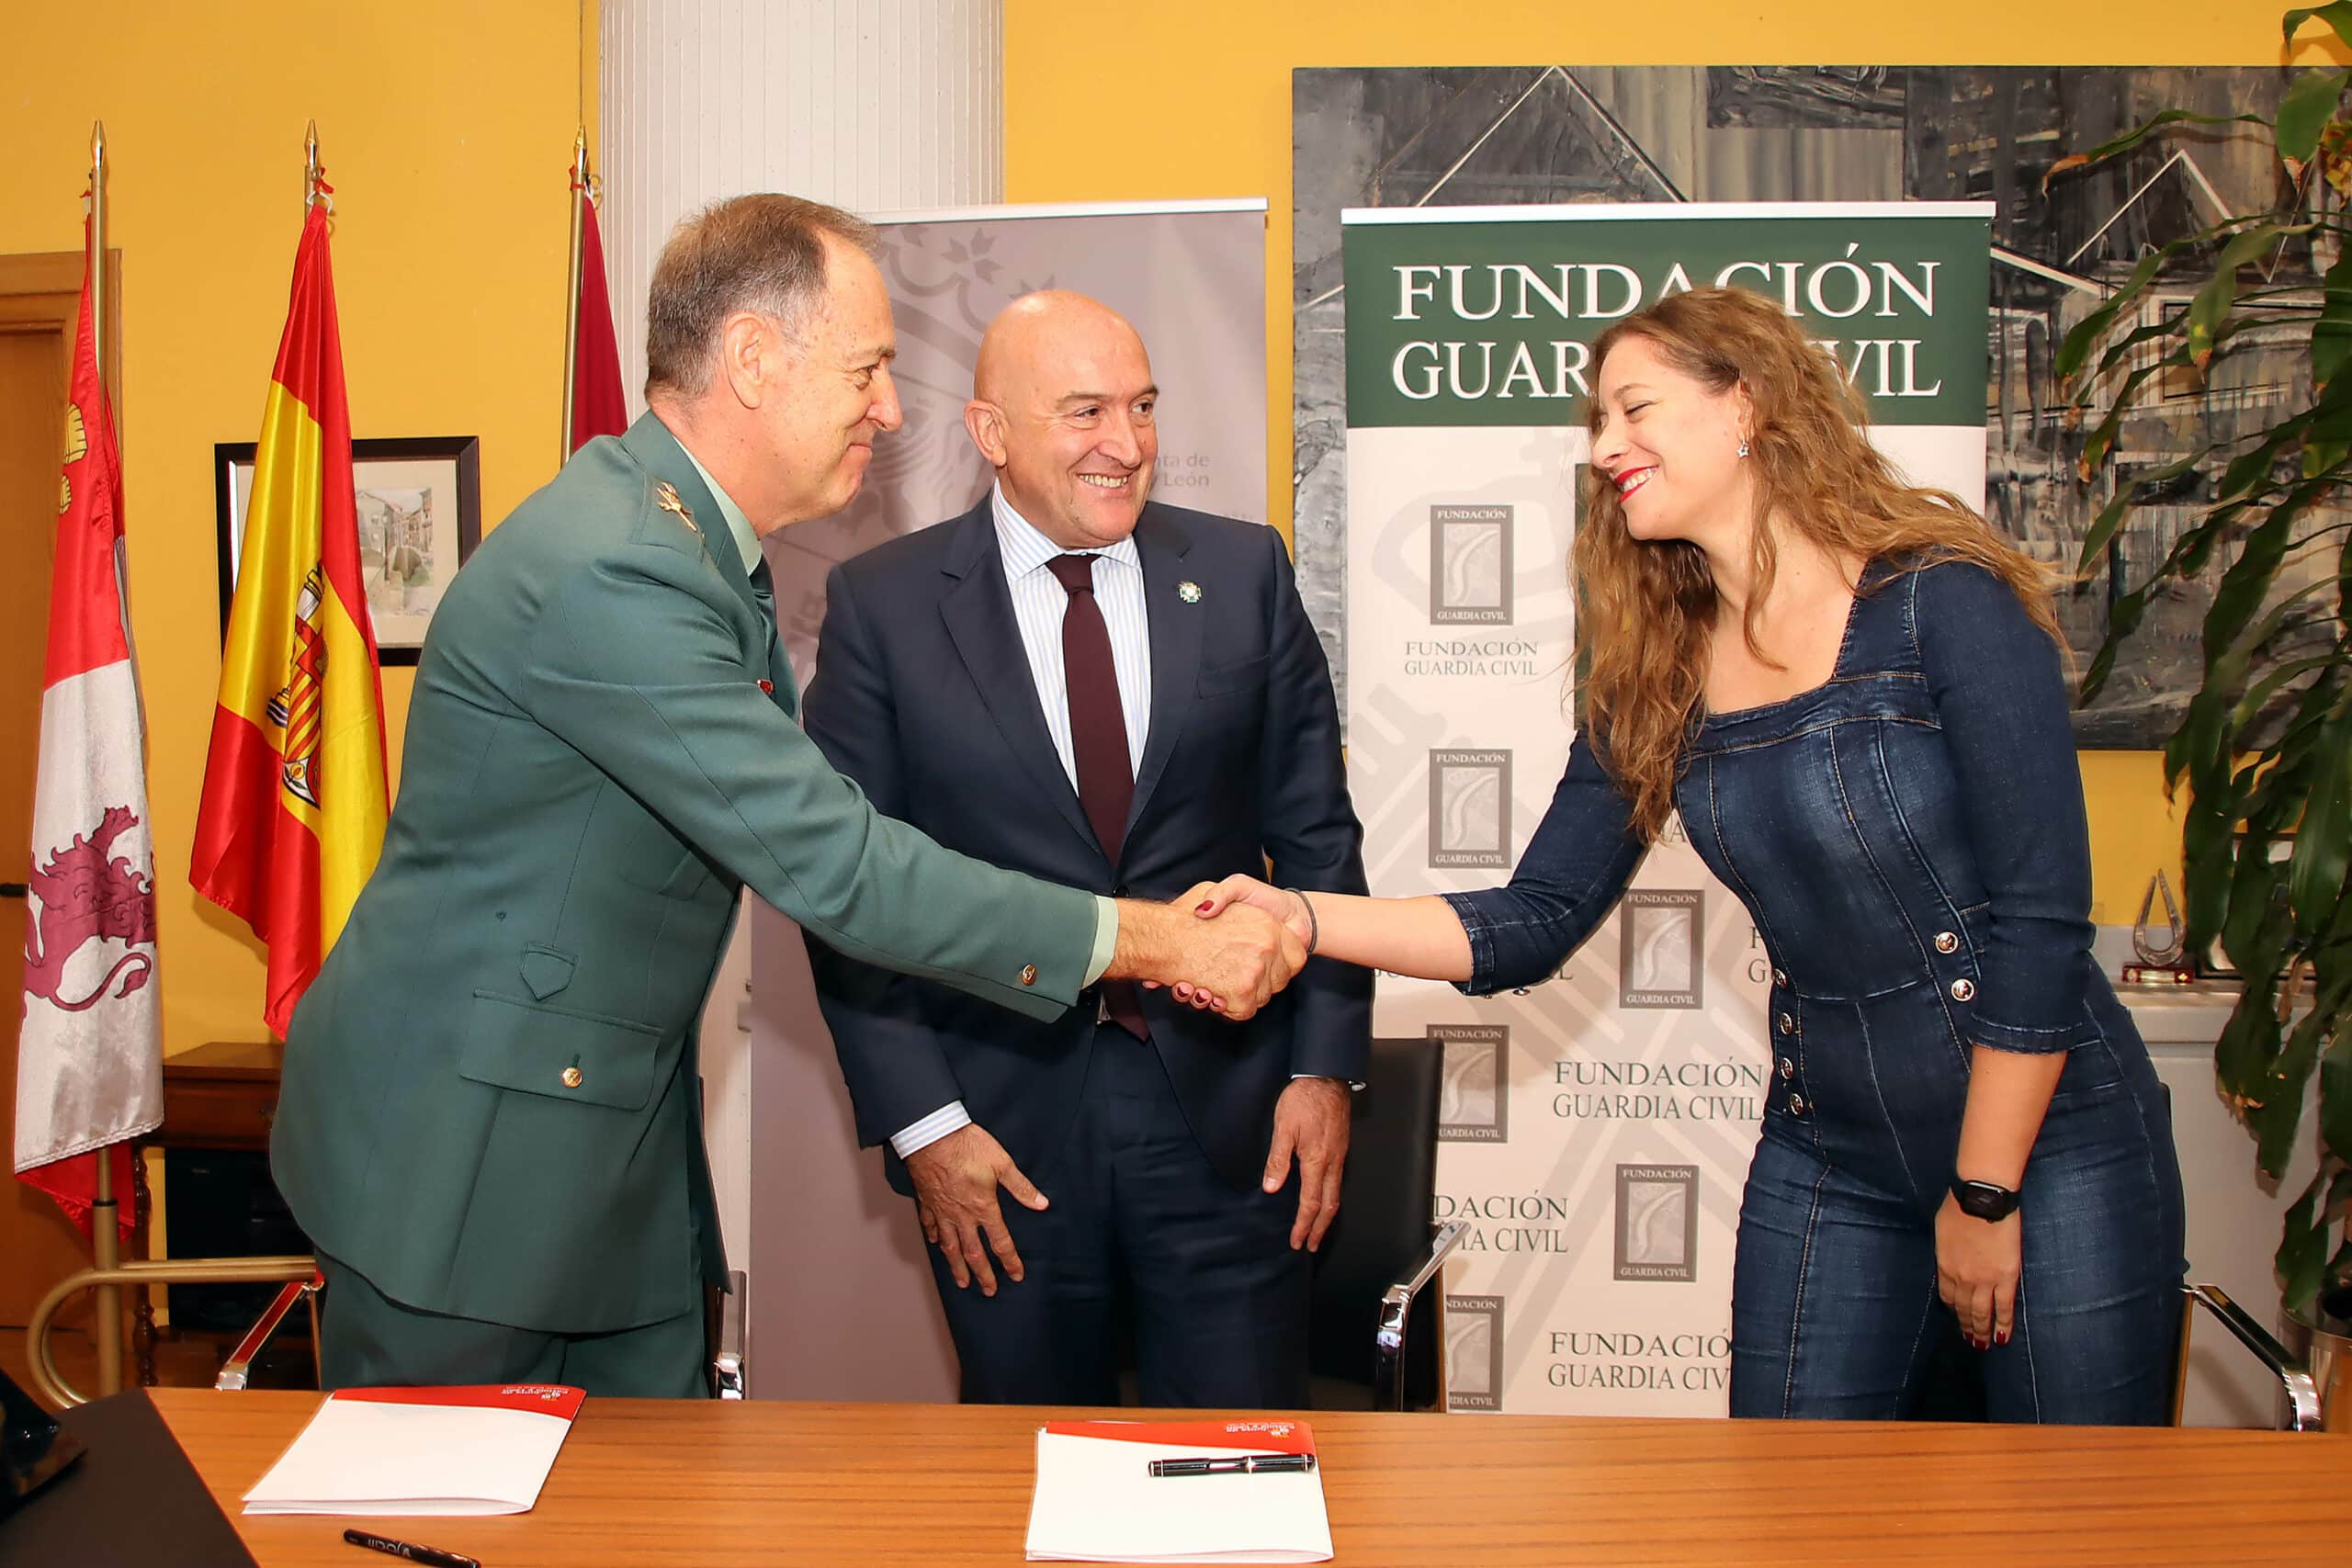 La Junta aporta 20.000 euros a la Fundación Guardia Civil para sus actos institucionales